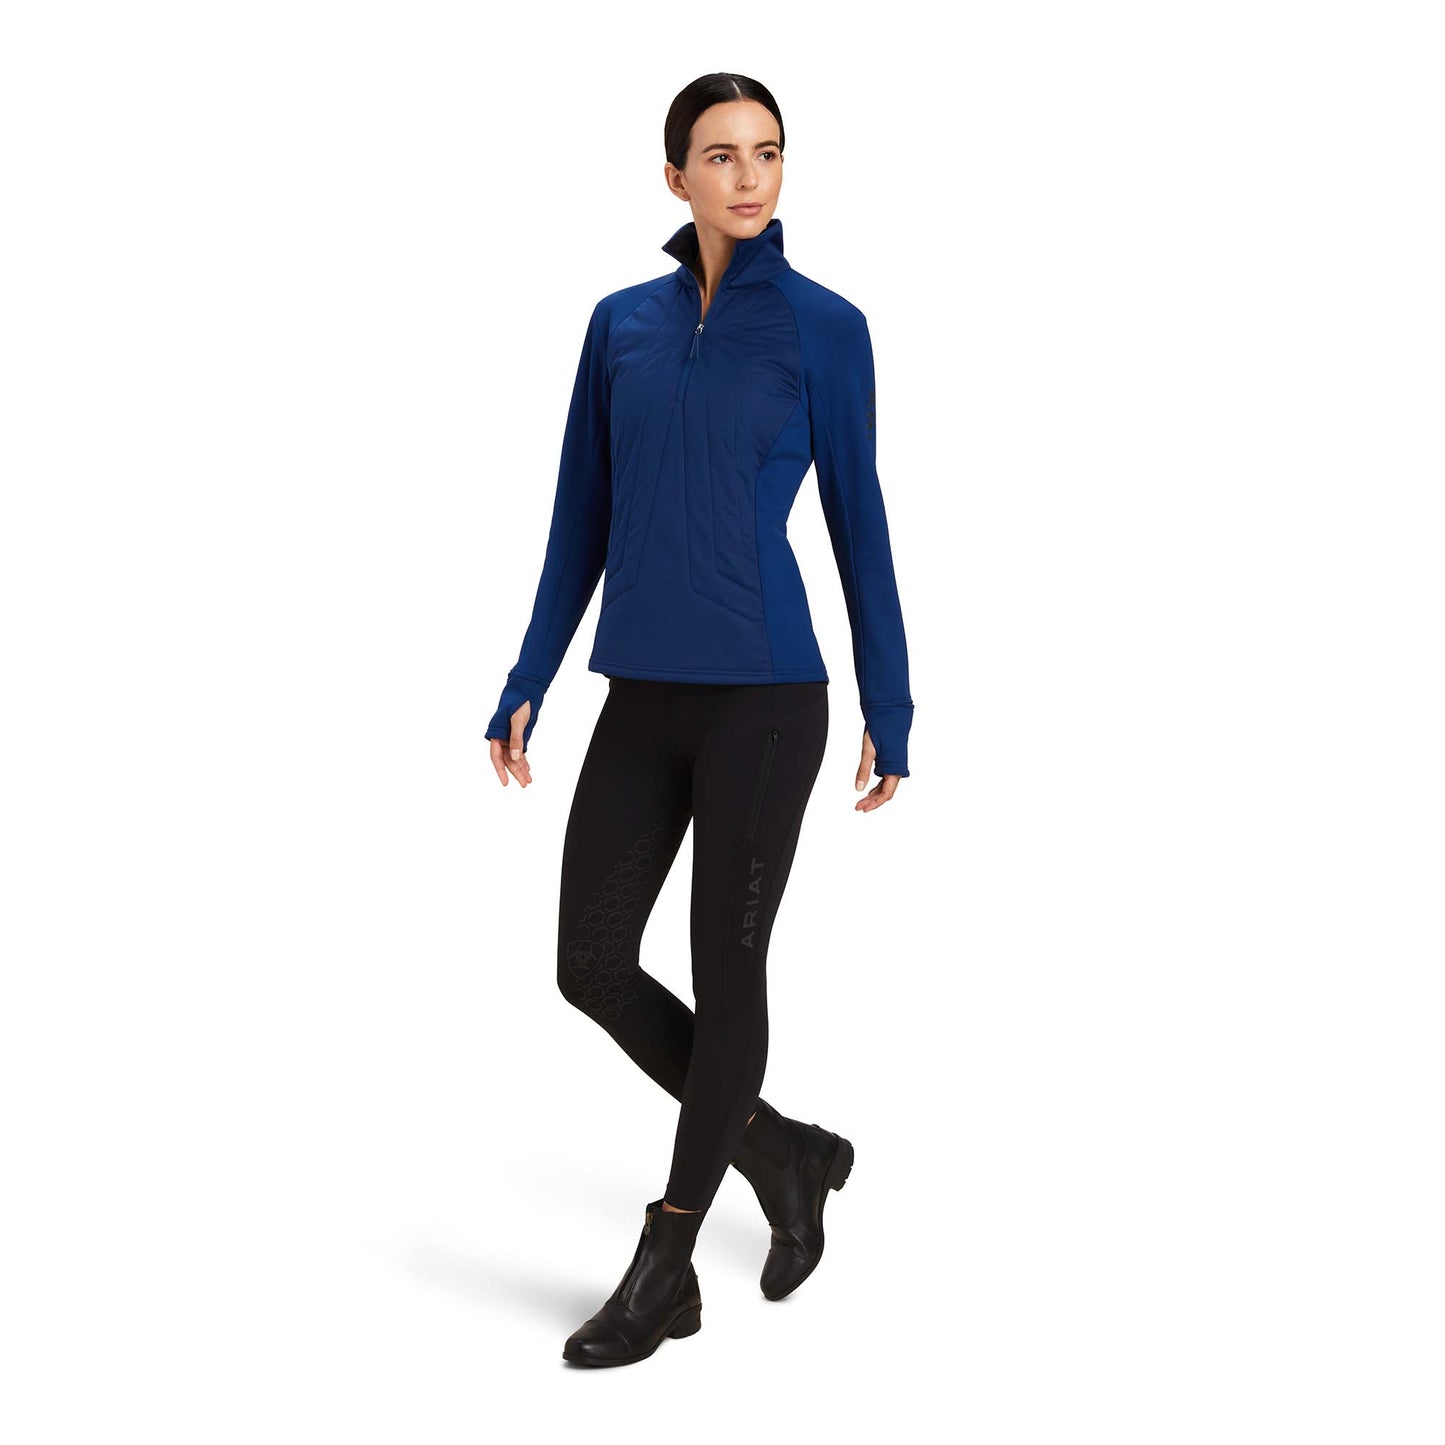 Ariat® Ladies Venture 1/2 Zip Estate Blue Pullover Sweat Shirt 10041396